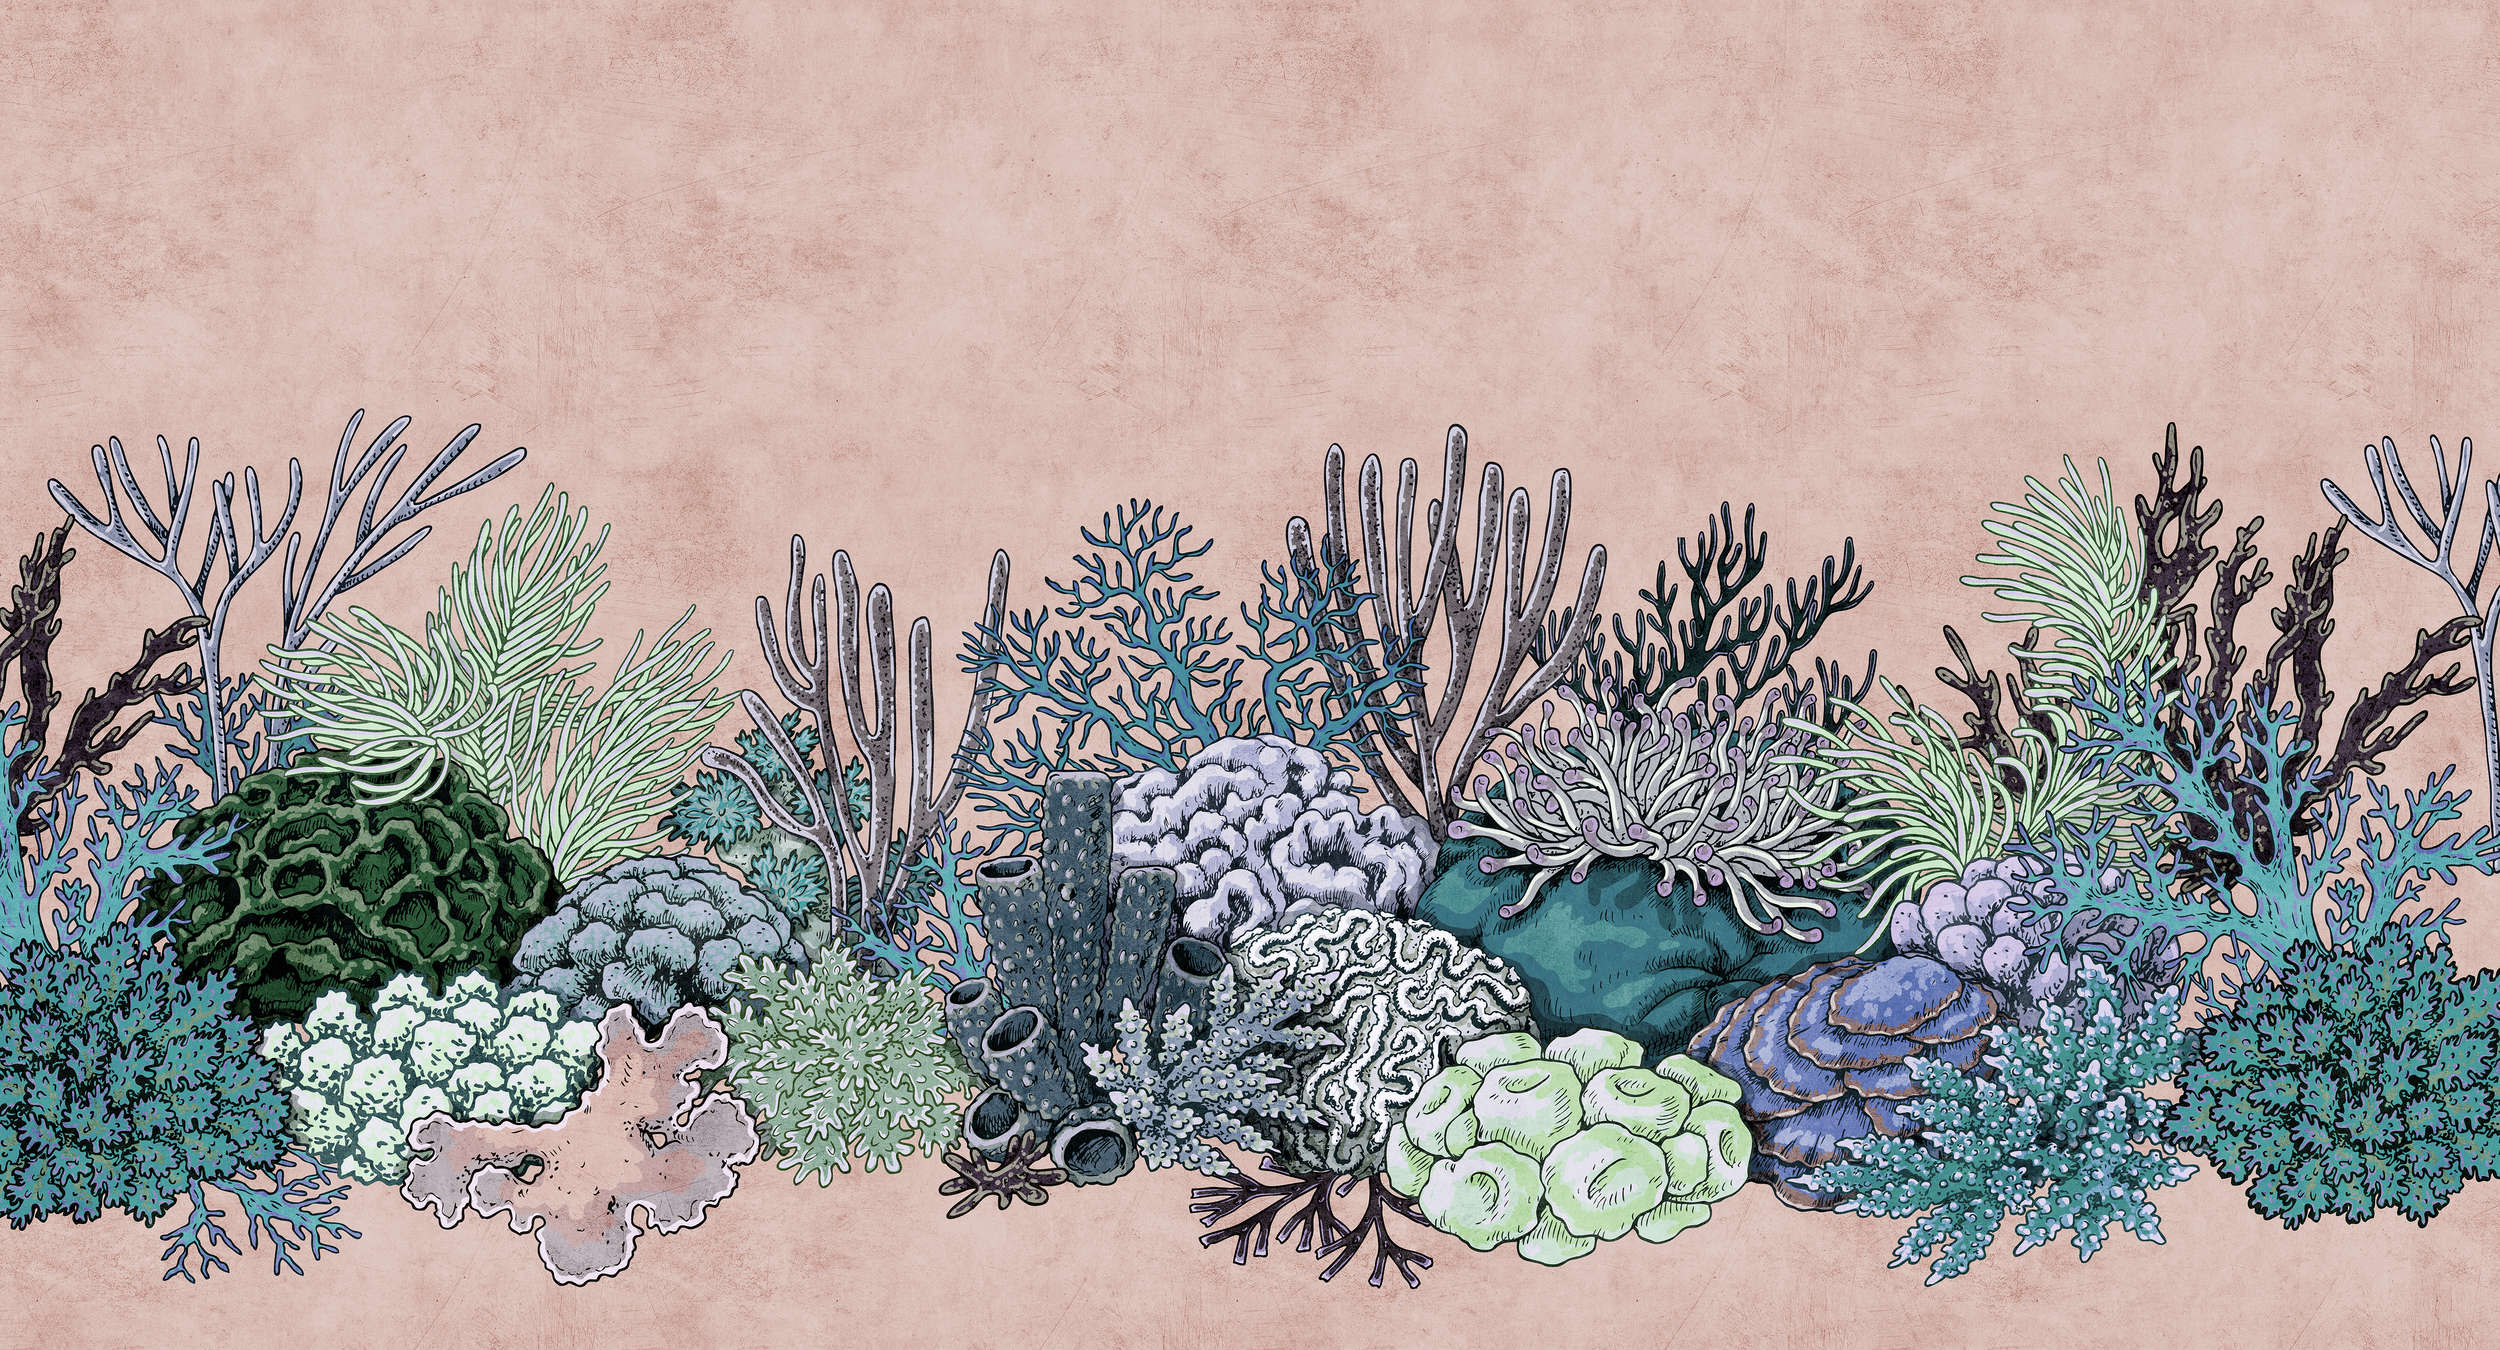             Octopus's Garden 2 - Papel pintado Coral en estructura de papel secante estilo dibujo - Verde, Rosa | Estructura no tejida
        